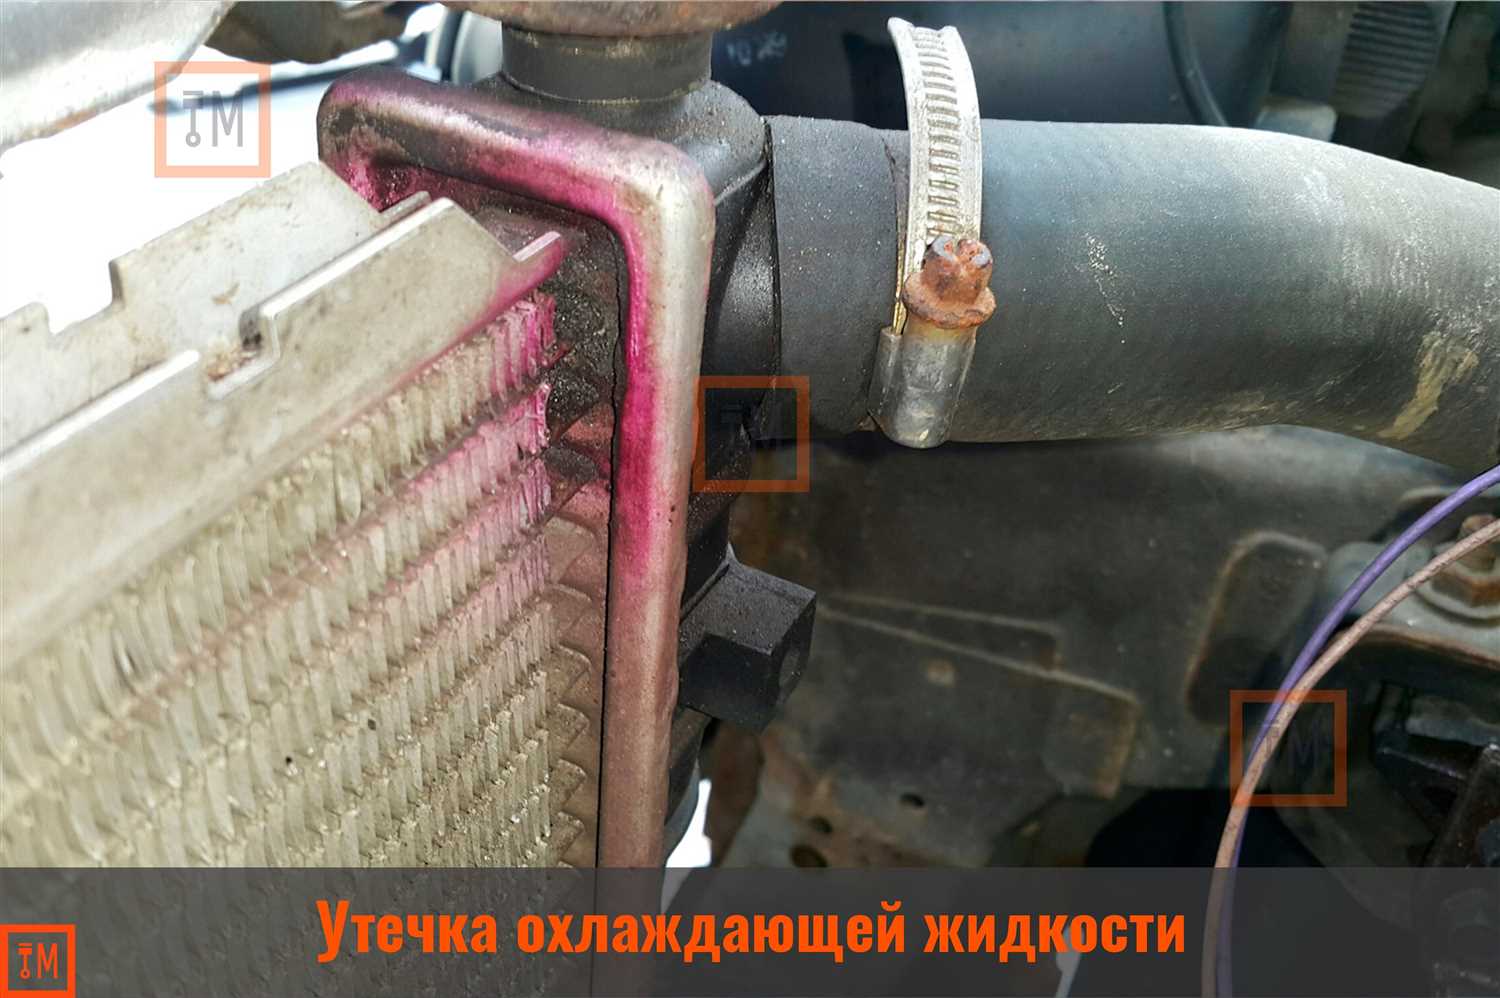 Простые меры по уходу за радиатором ВАЗ 2101: предотвращение поломок и перегрева